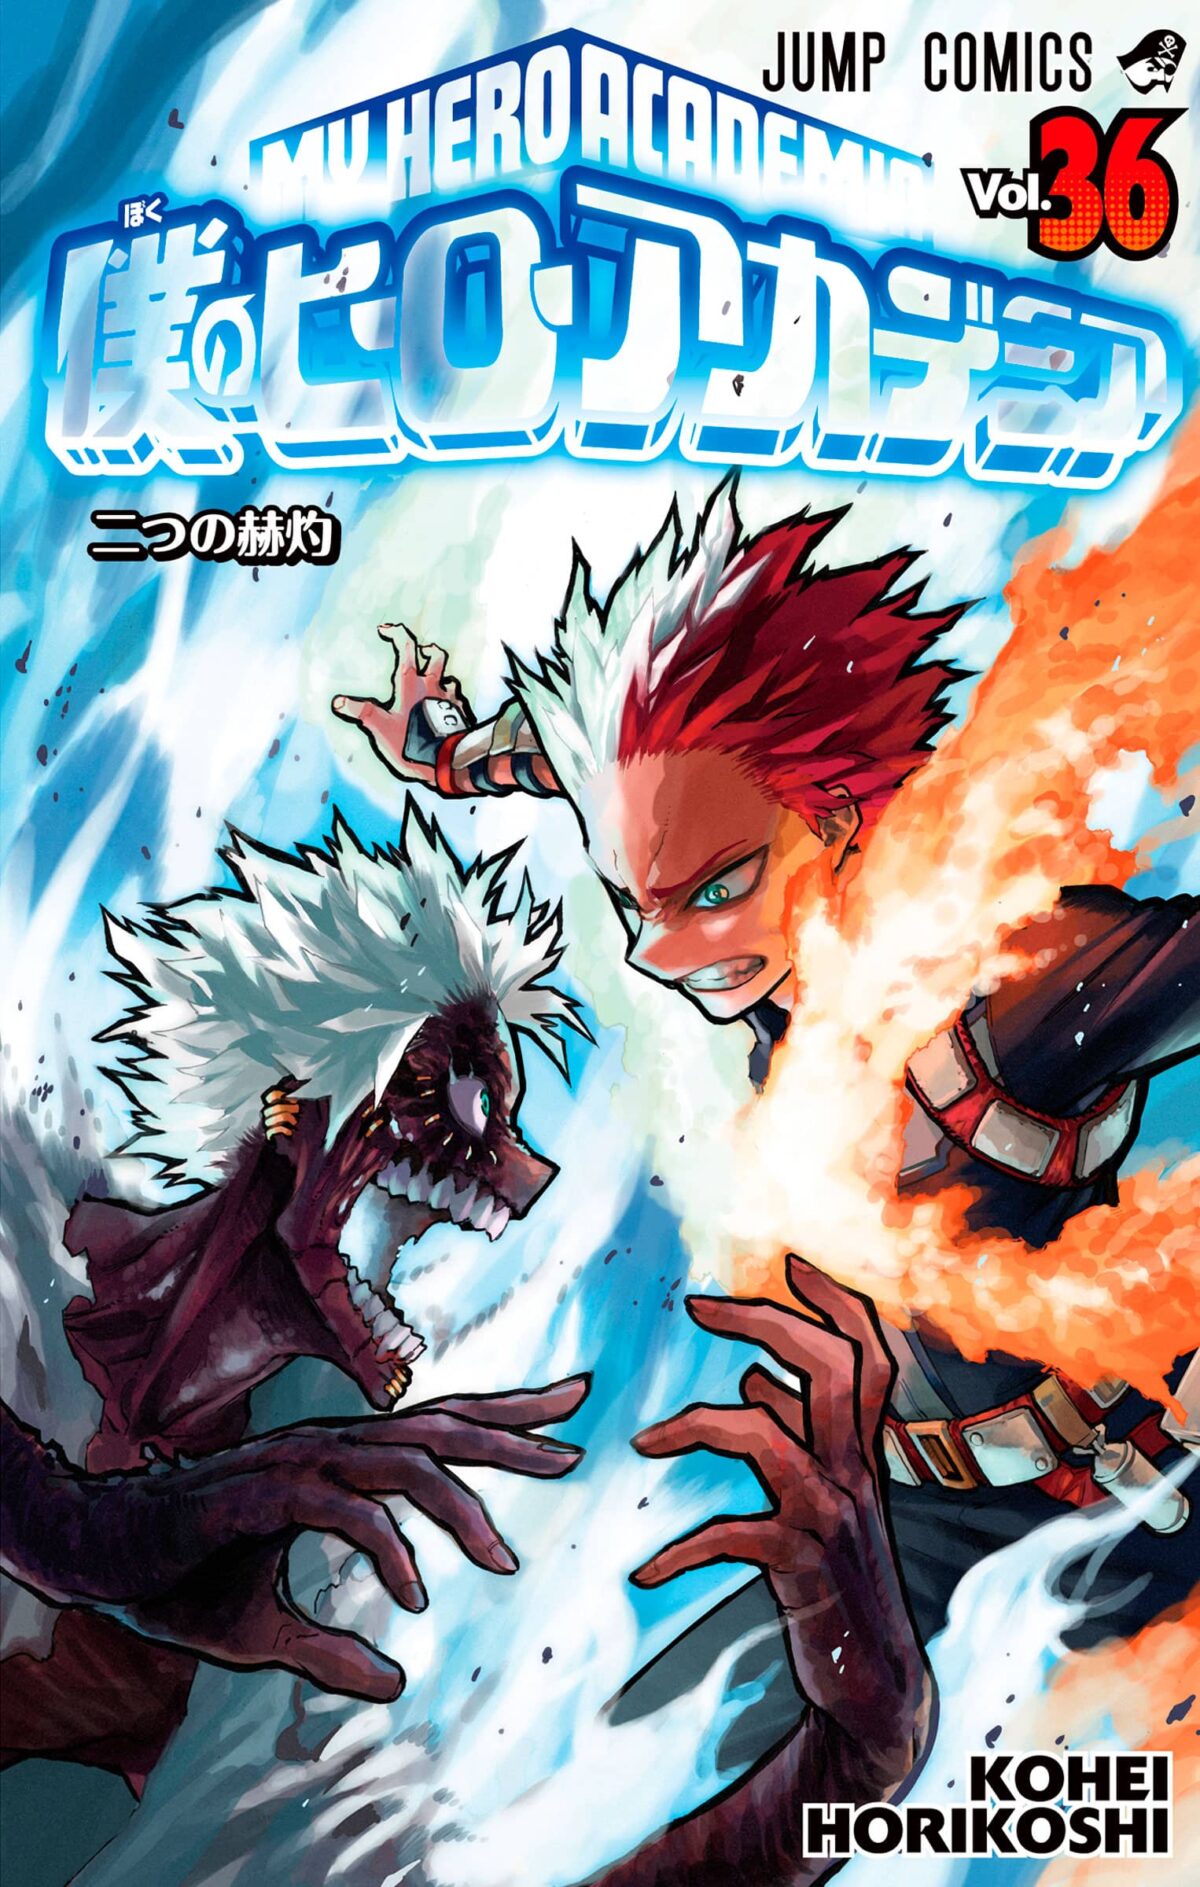 El manga Boku no Hero Academia revelo la portada para su volumen #36